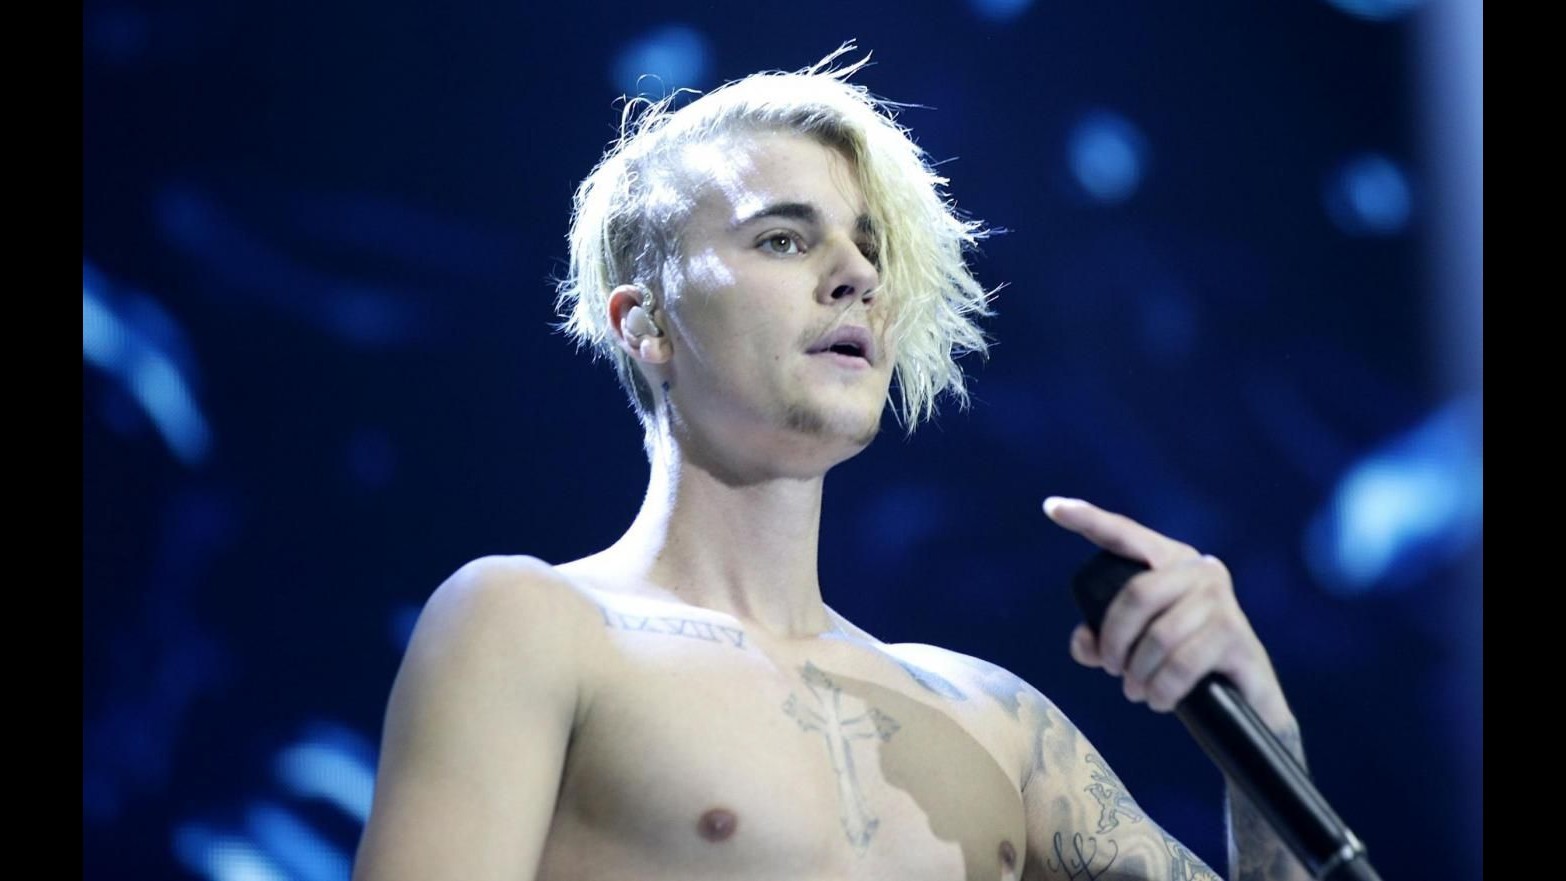 Justin Bieber cerca ragazza su Instagram e lancia tour ‘Purpose’